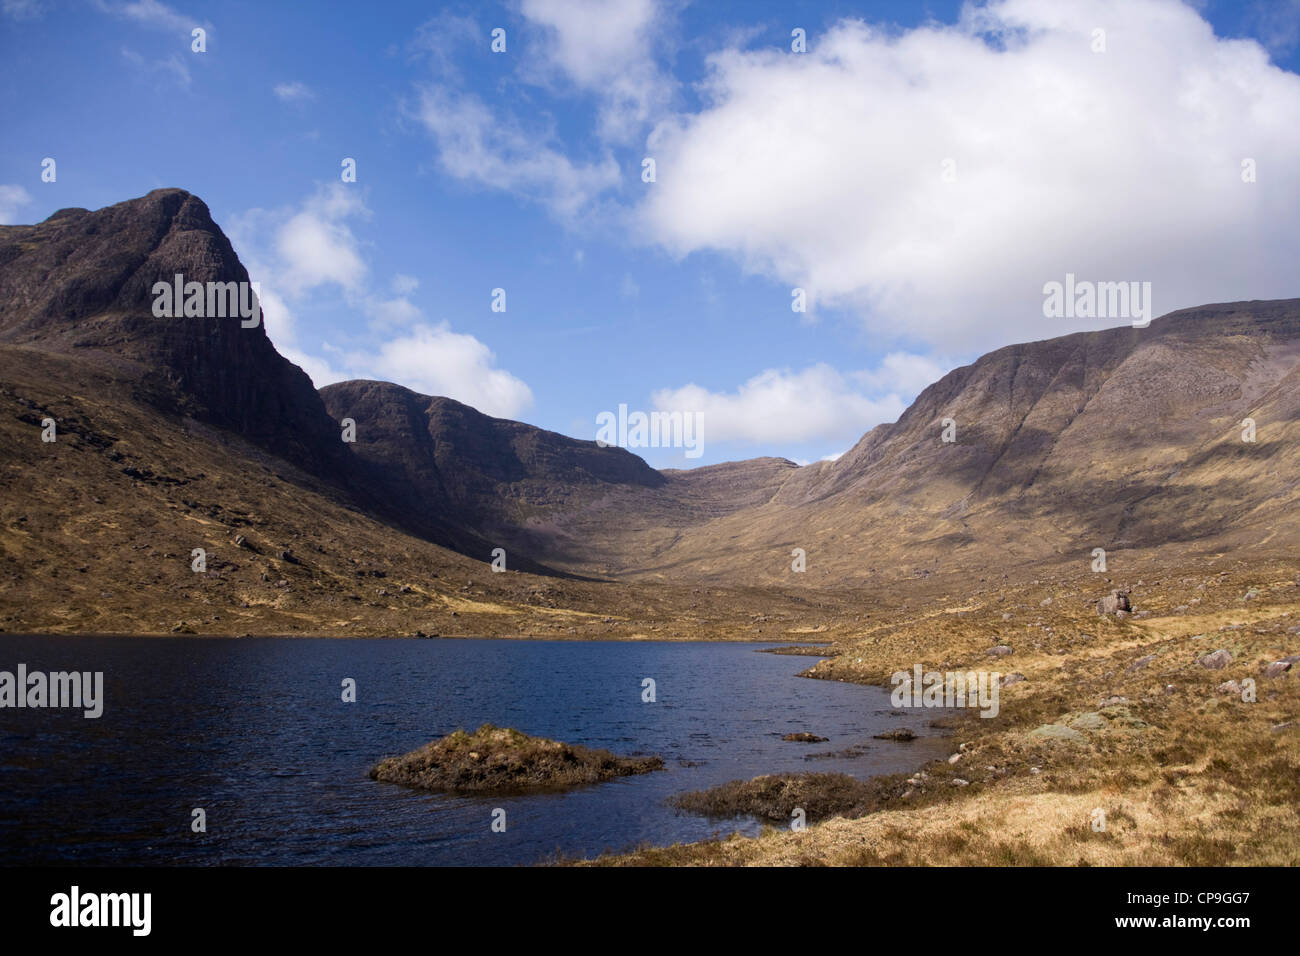 Looking across Loch Coire nan Arr reservoir  towards A'Chioch  and Beinn Bhan. Stock Photo